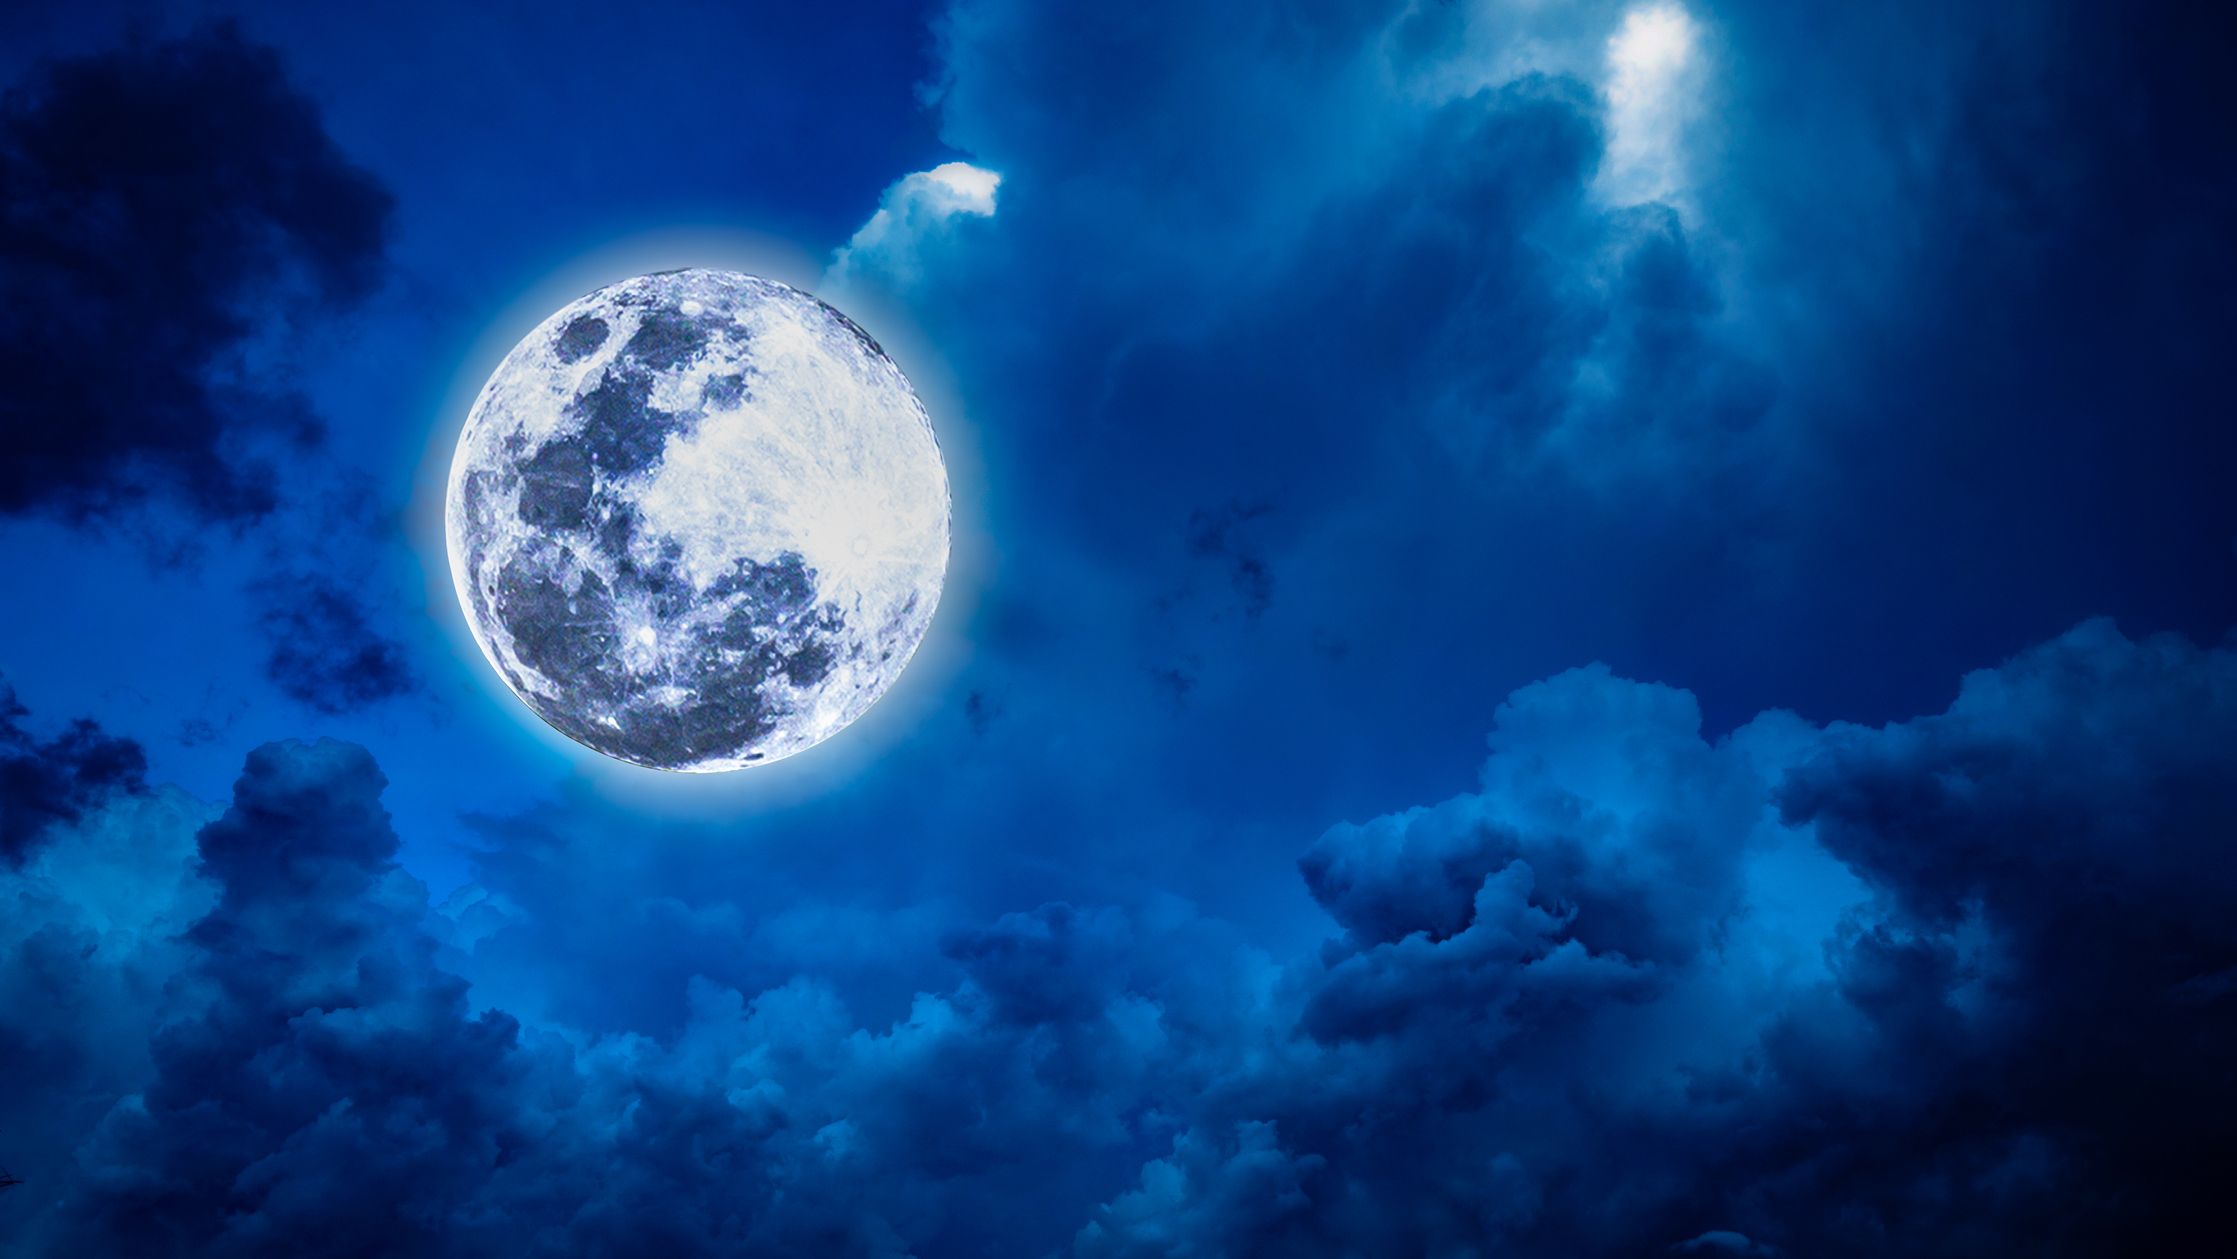 Mặt trăng xanh, một hiện tượng hiếm hoi, đang được săn đón khắp nơi trong tháng 8/